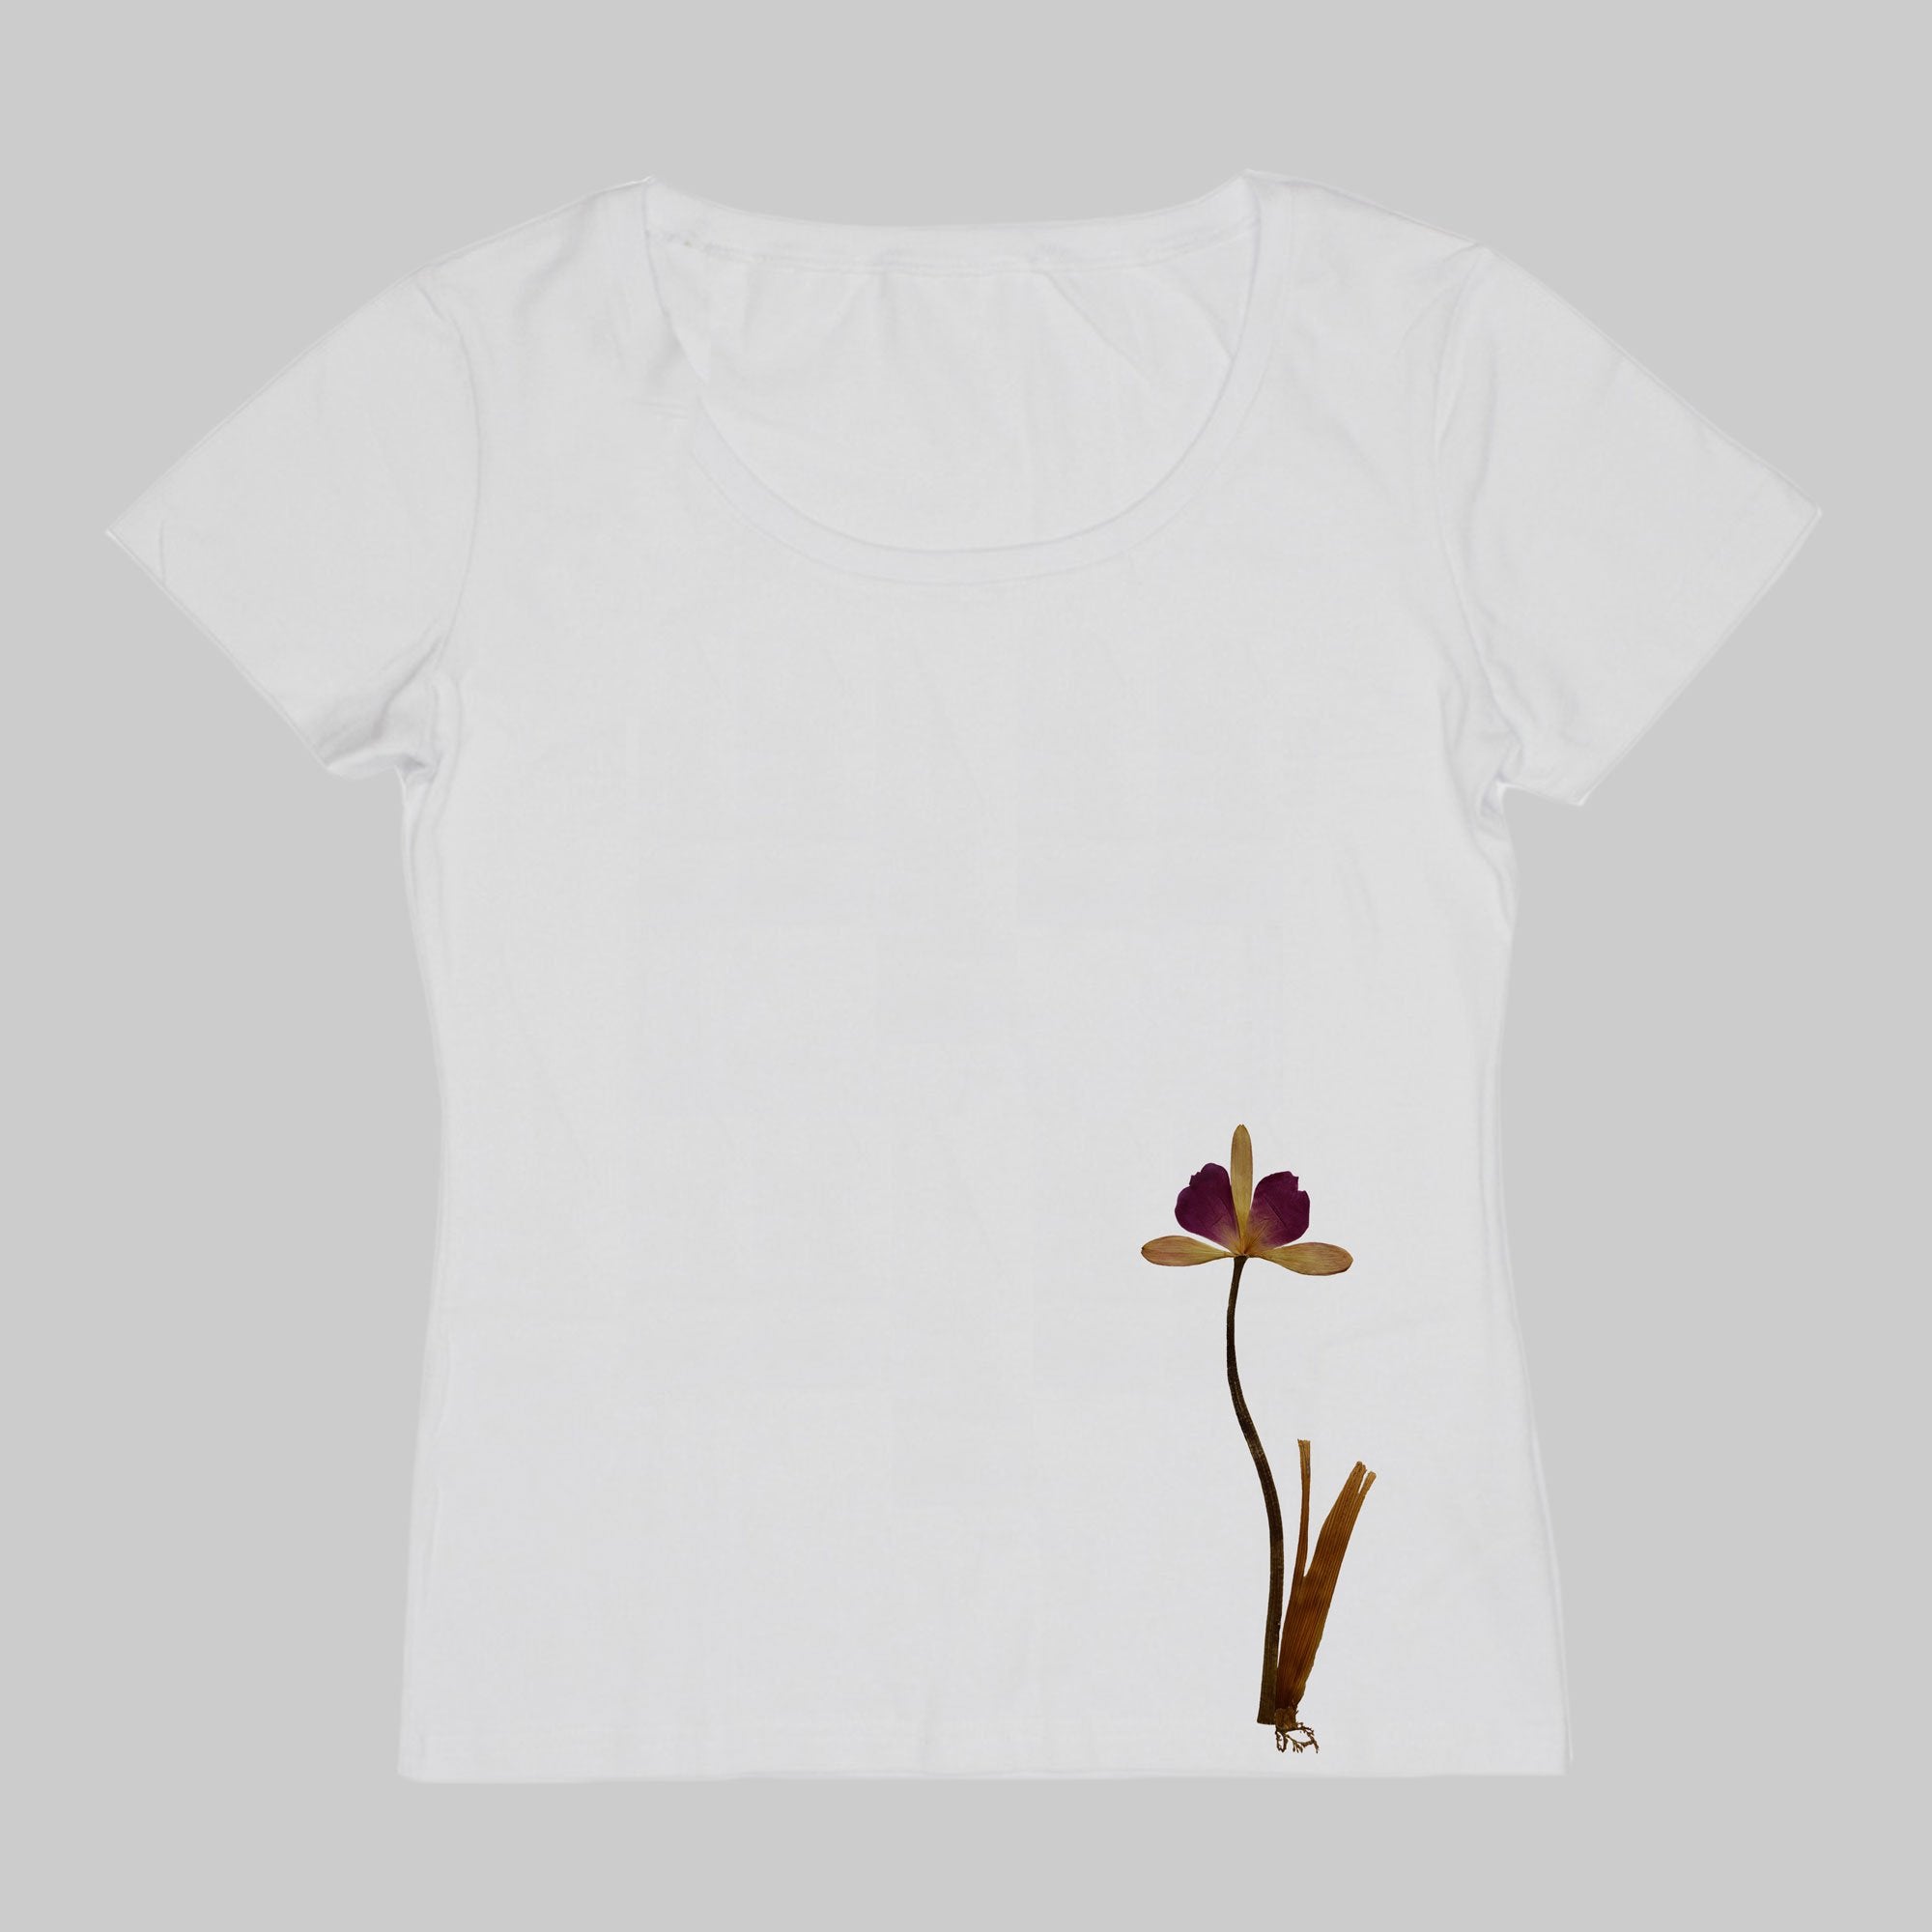 ZARUK Designs Flower-Like Ornament T-Shirt (Women's)